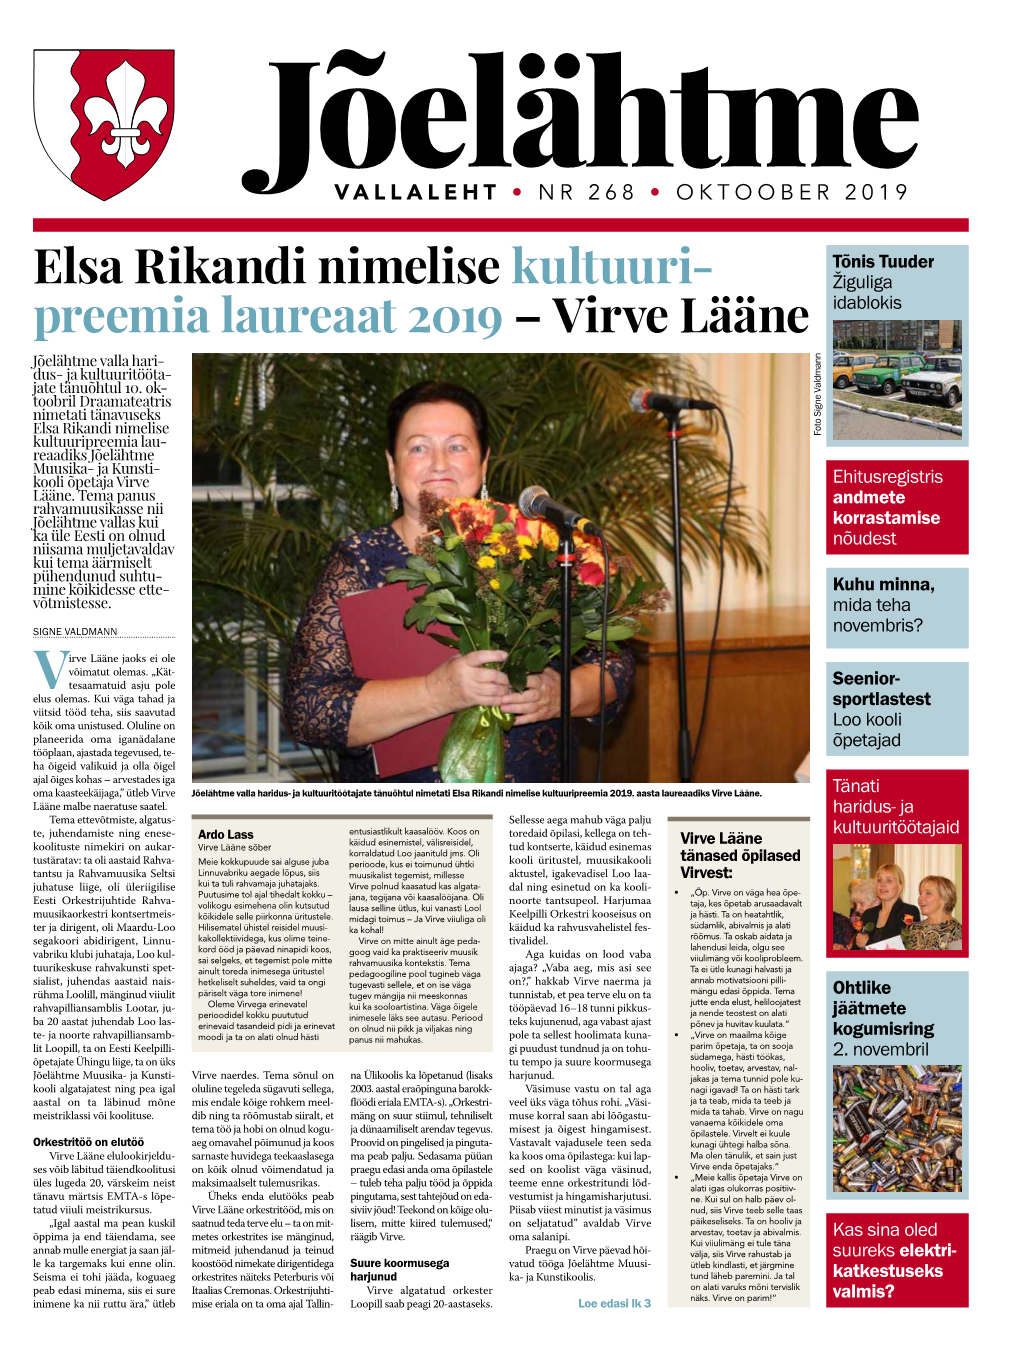 Elsa Rikandi Nimelise Kultuuri Preemia Laureaat 2019 – Virve Lääne